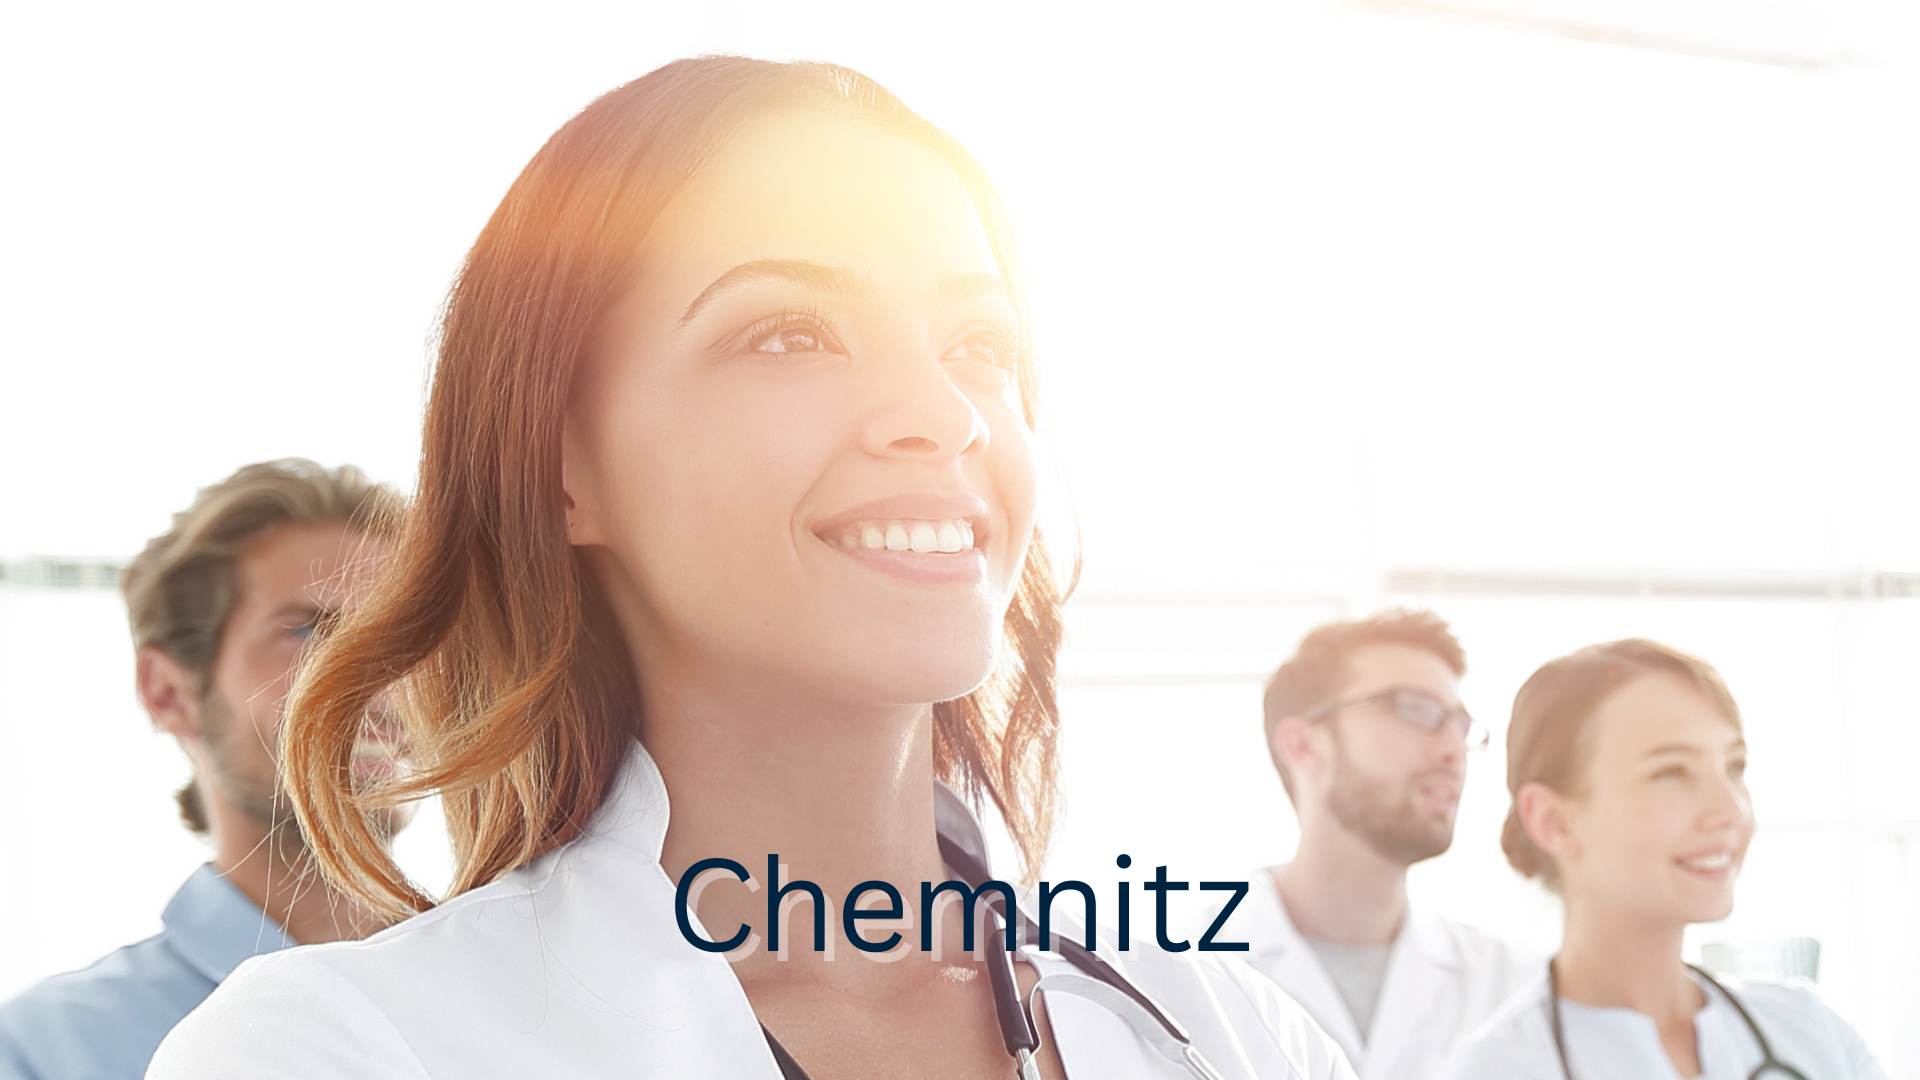 Stockbild mit vier lächelnden Medizinern und Chemnitz als Schriftzug 